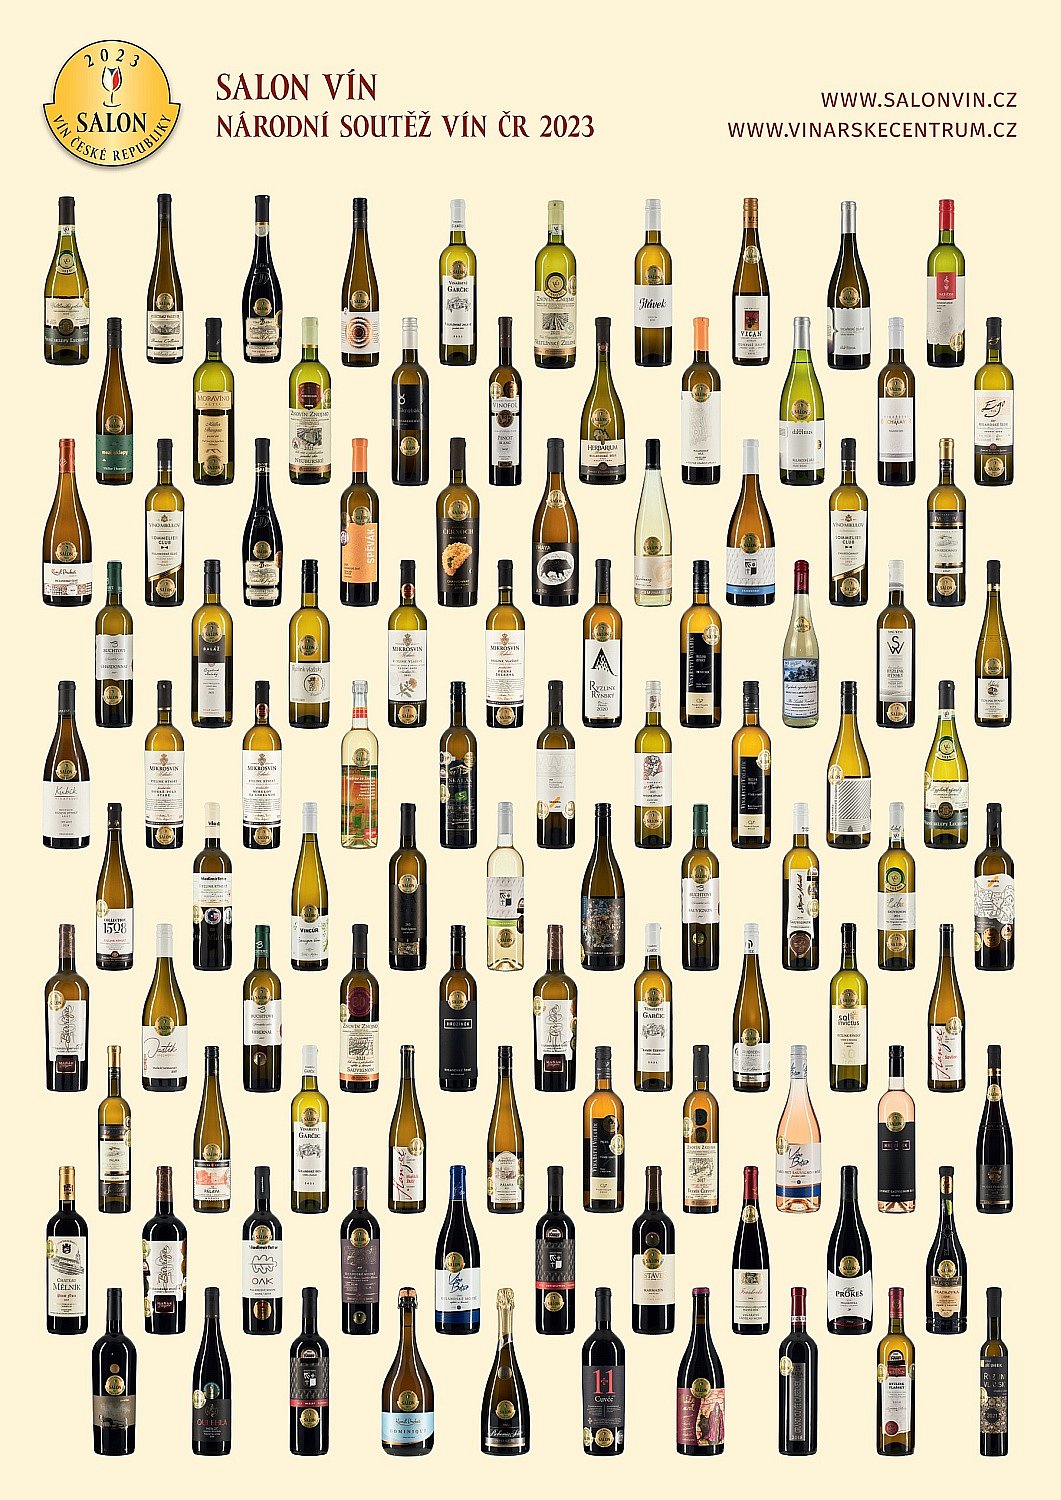 Plakát - lahve Salon vín 2023